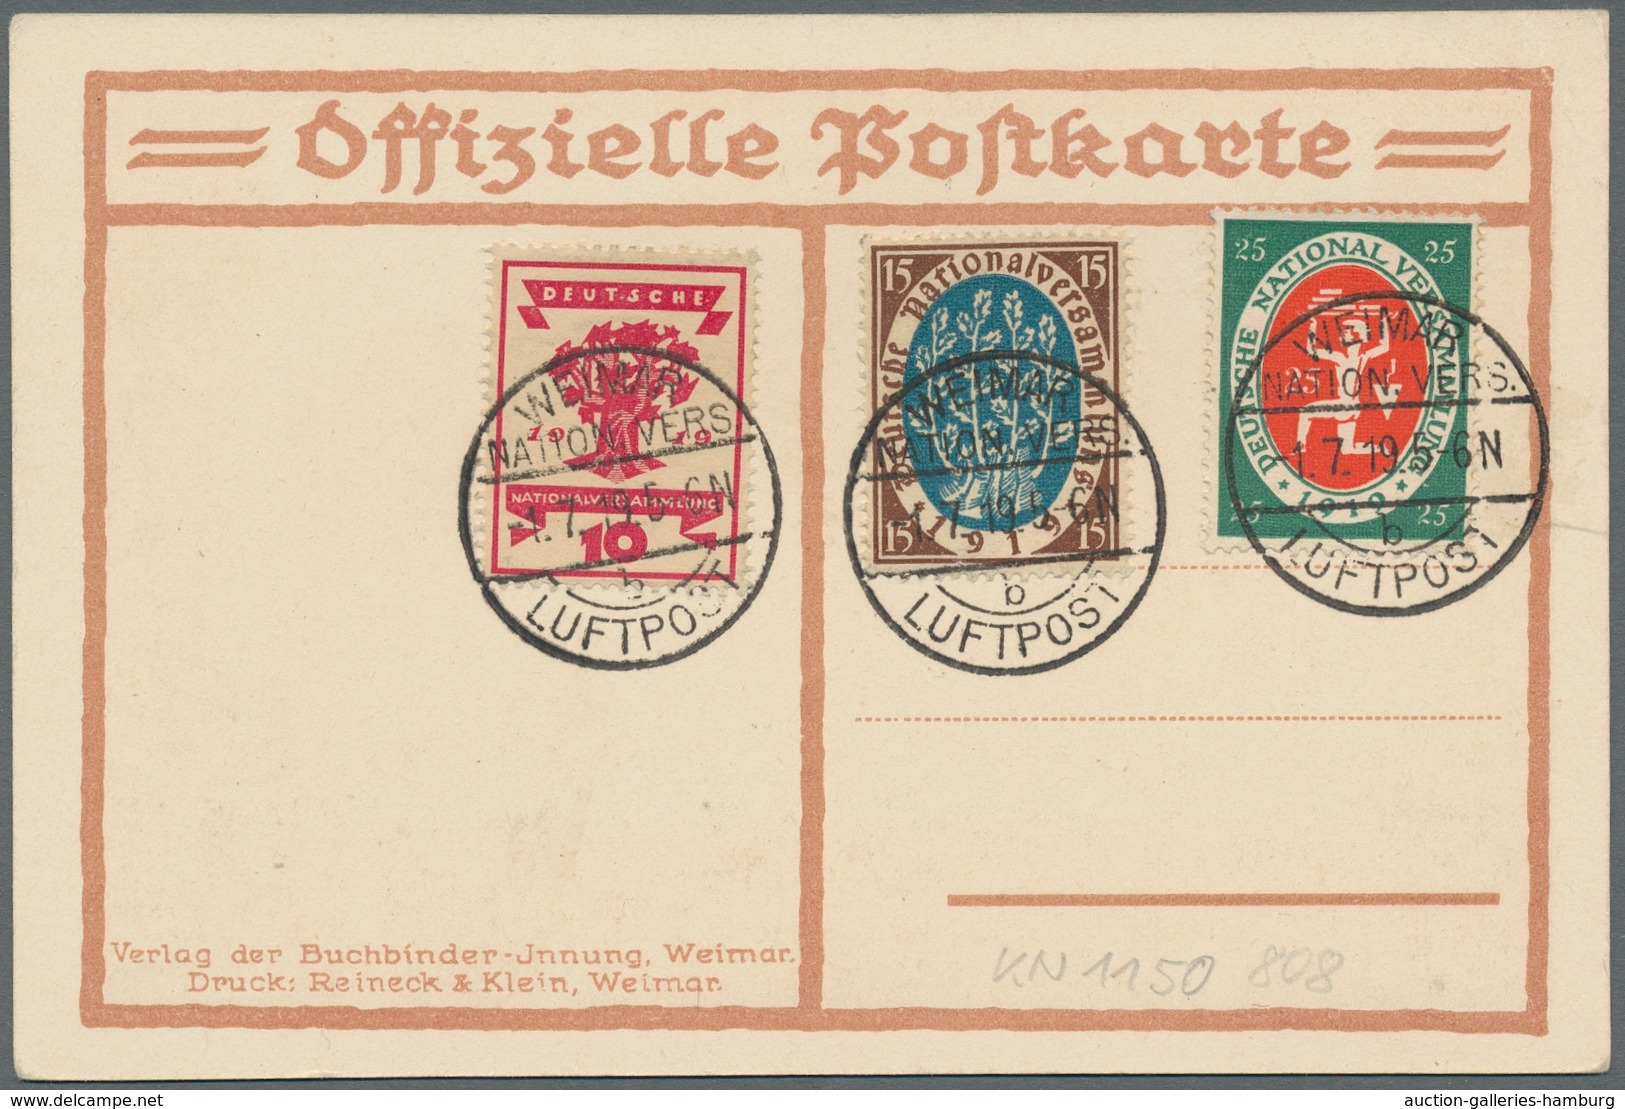 Deutsches Reich - Inflation: 1919 Nationalversammlung fünf mal auf FDC, dabei 2 farbige Bildkarten.